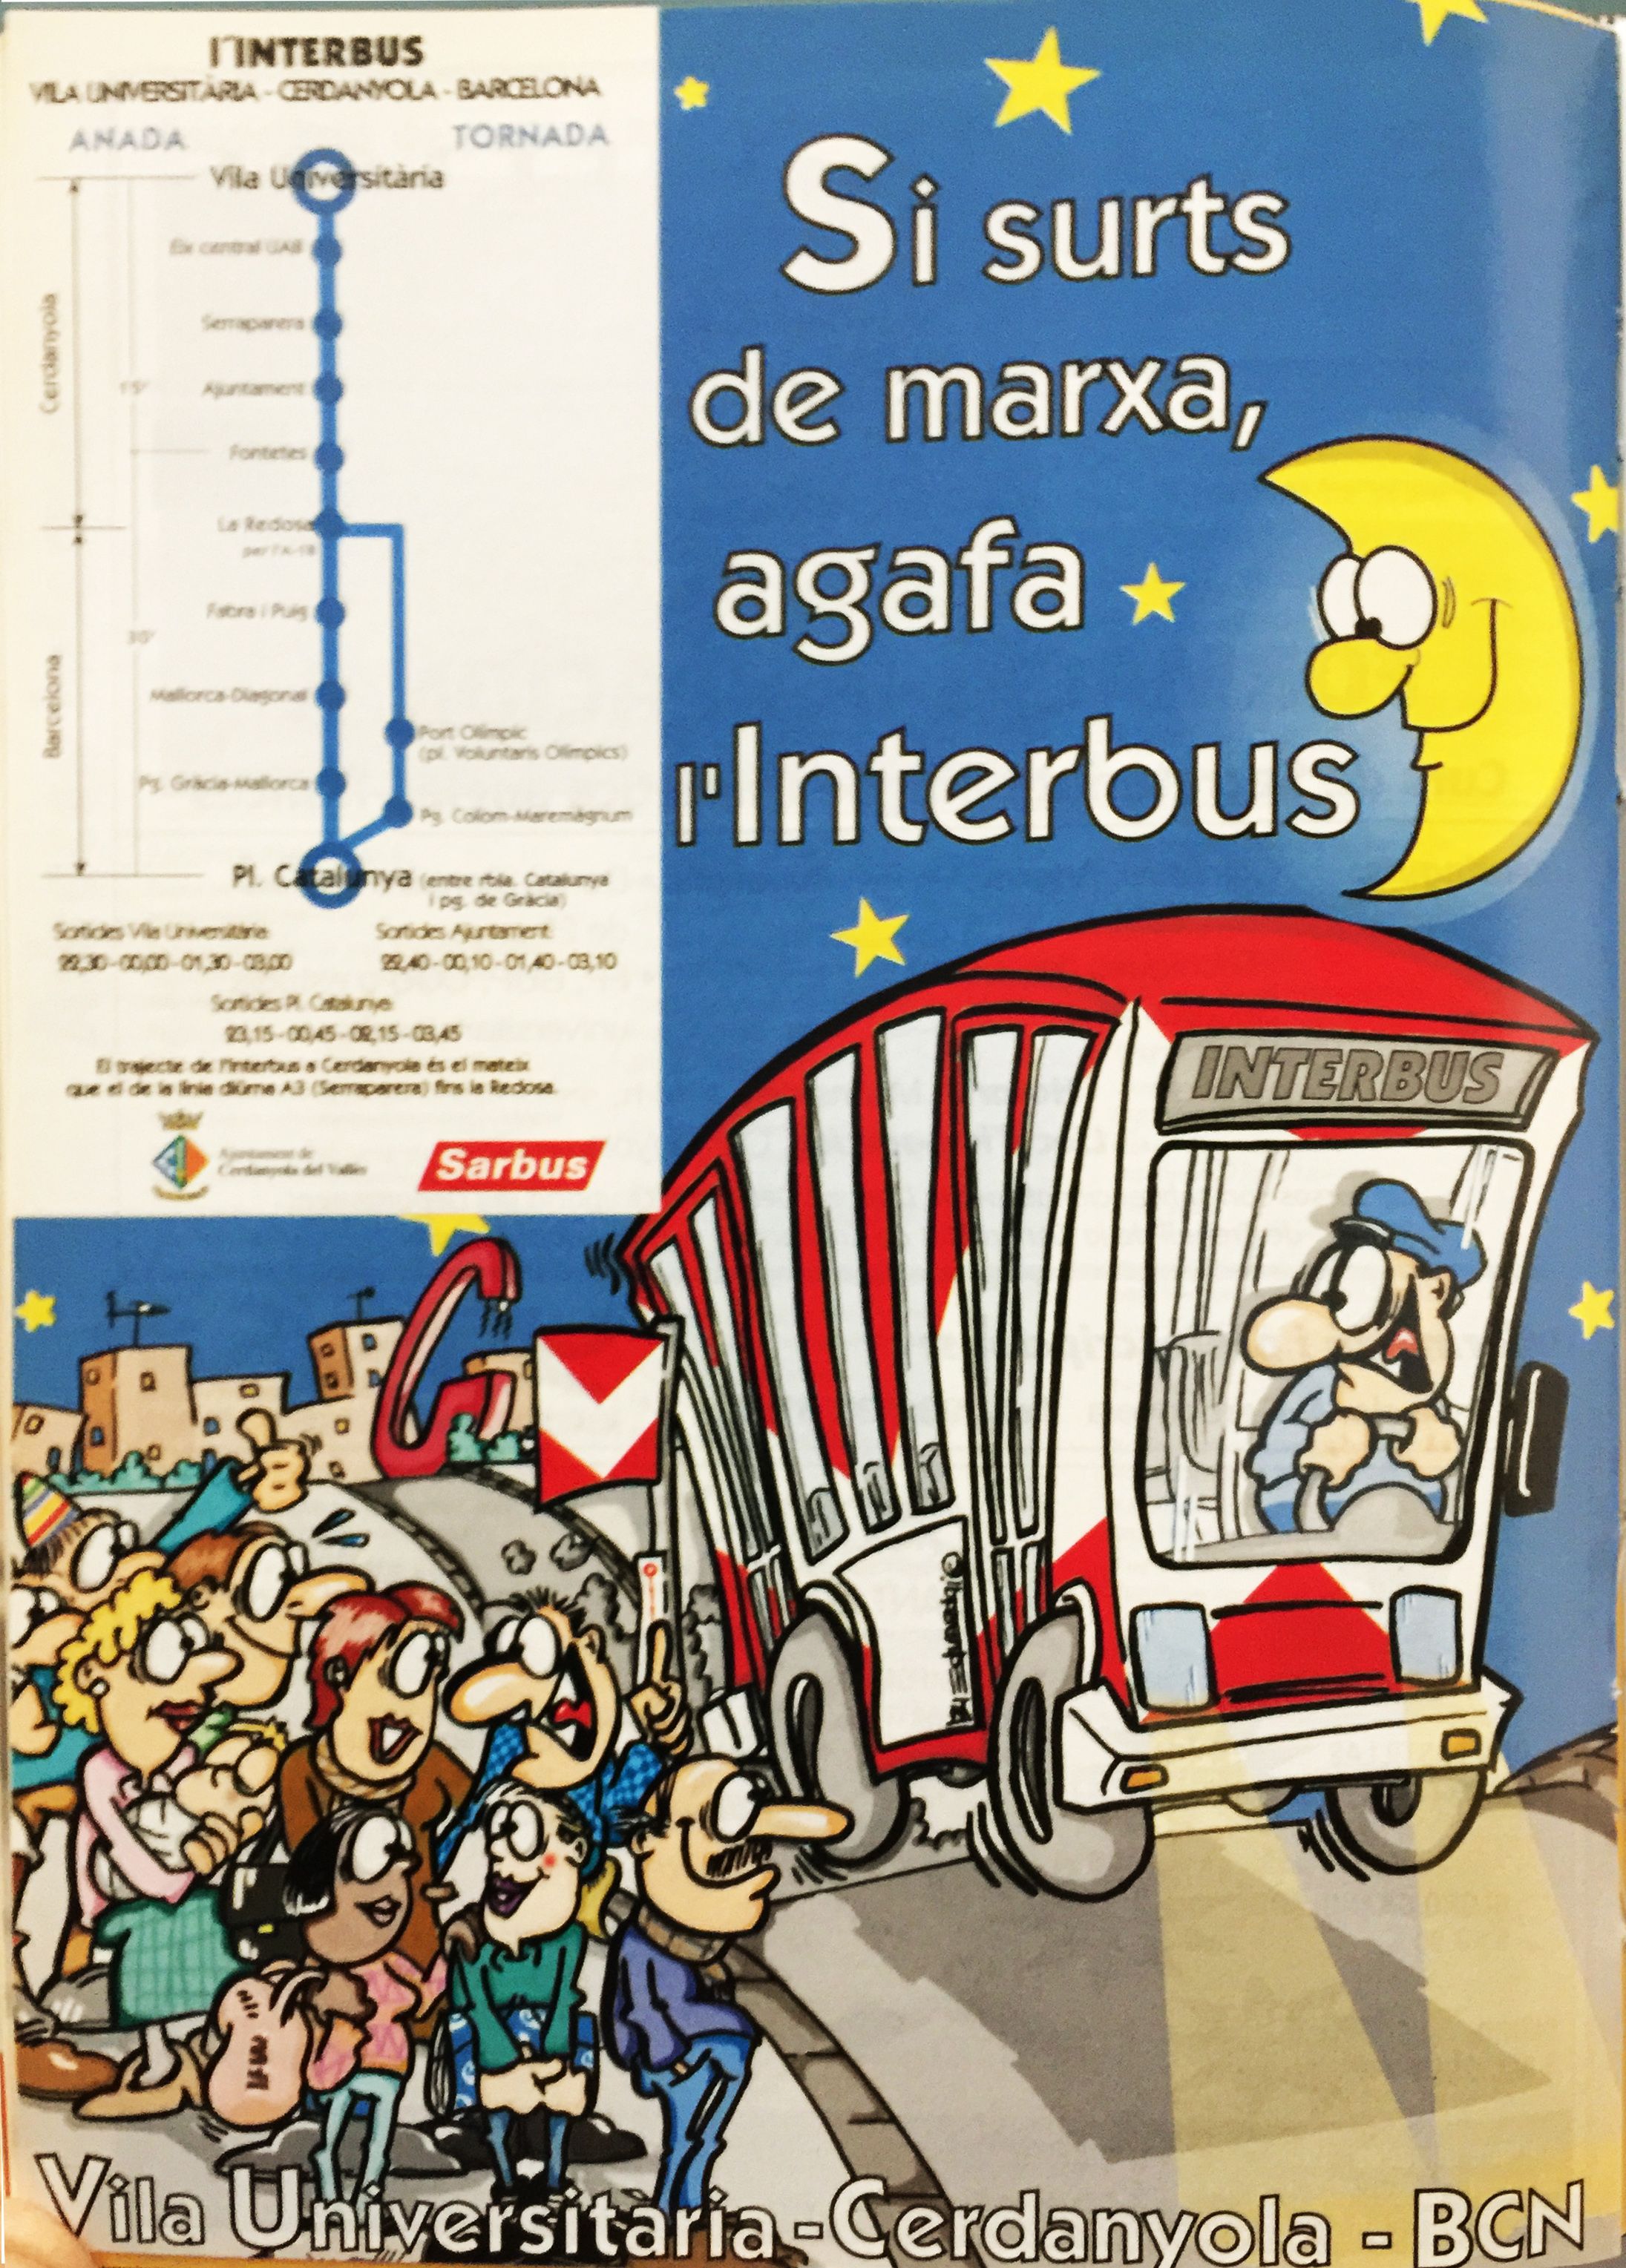 Publicitat Internacional del Interbus (1999)